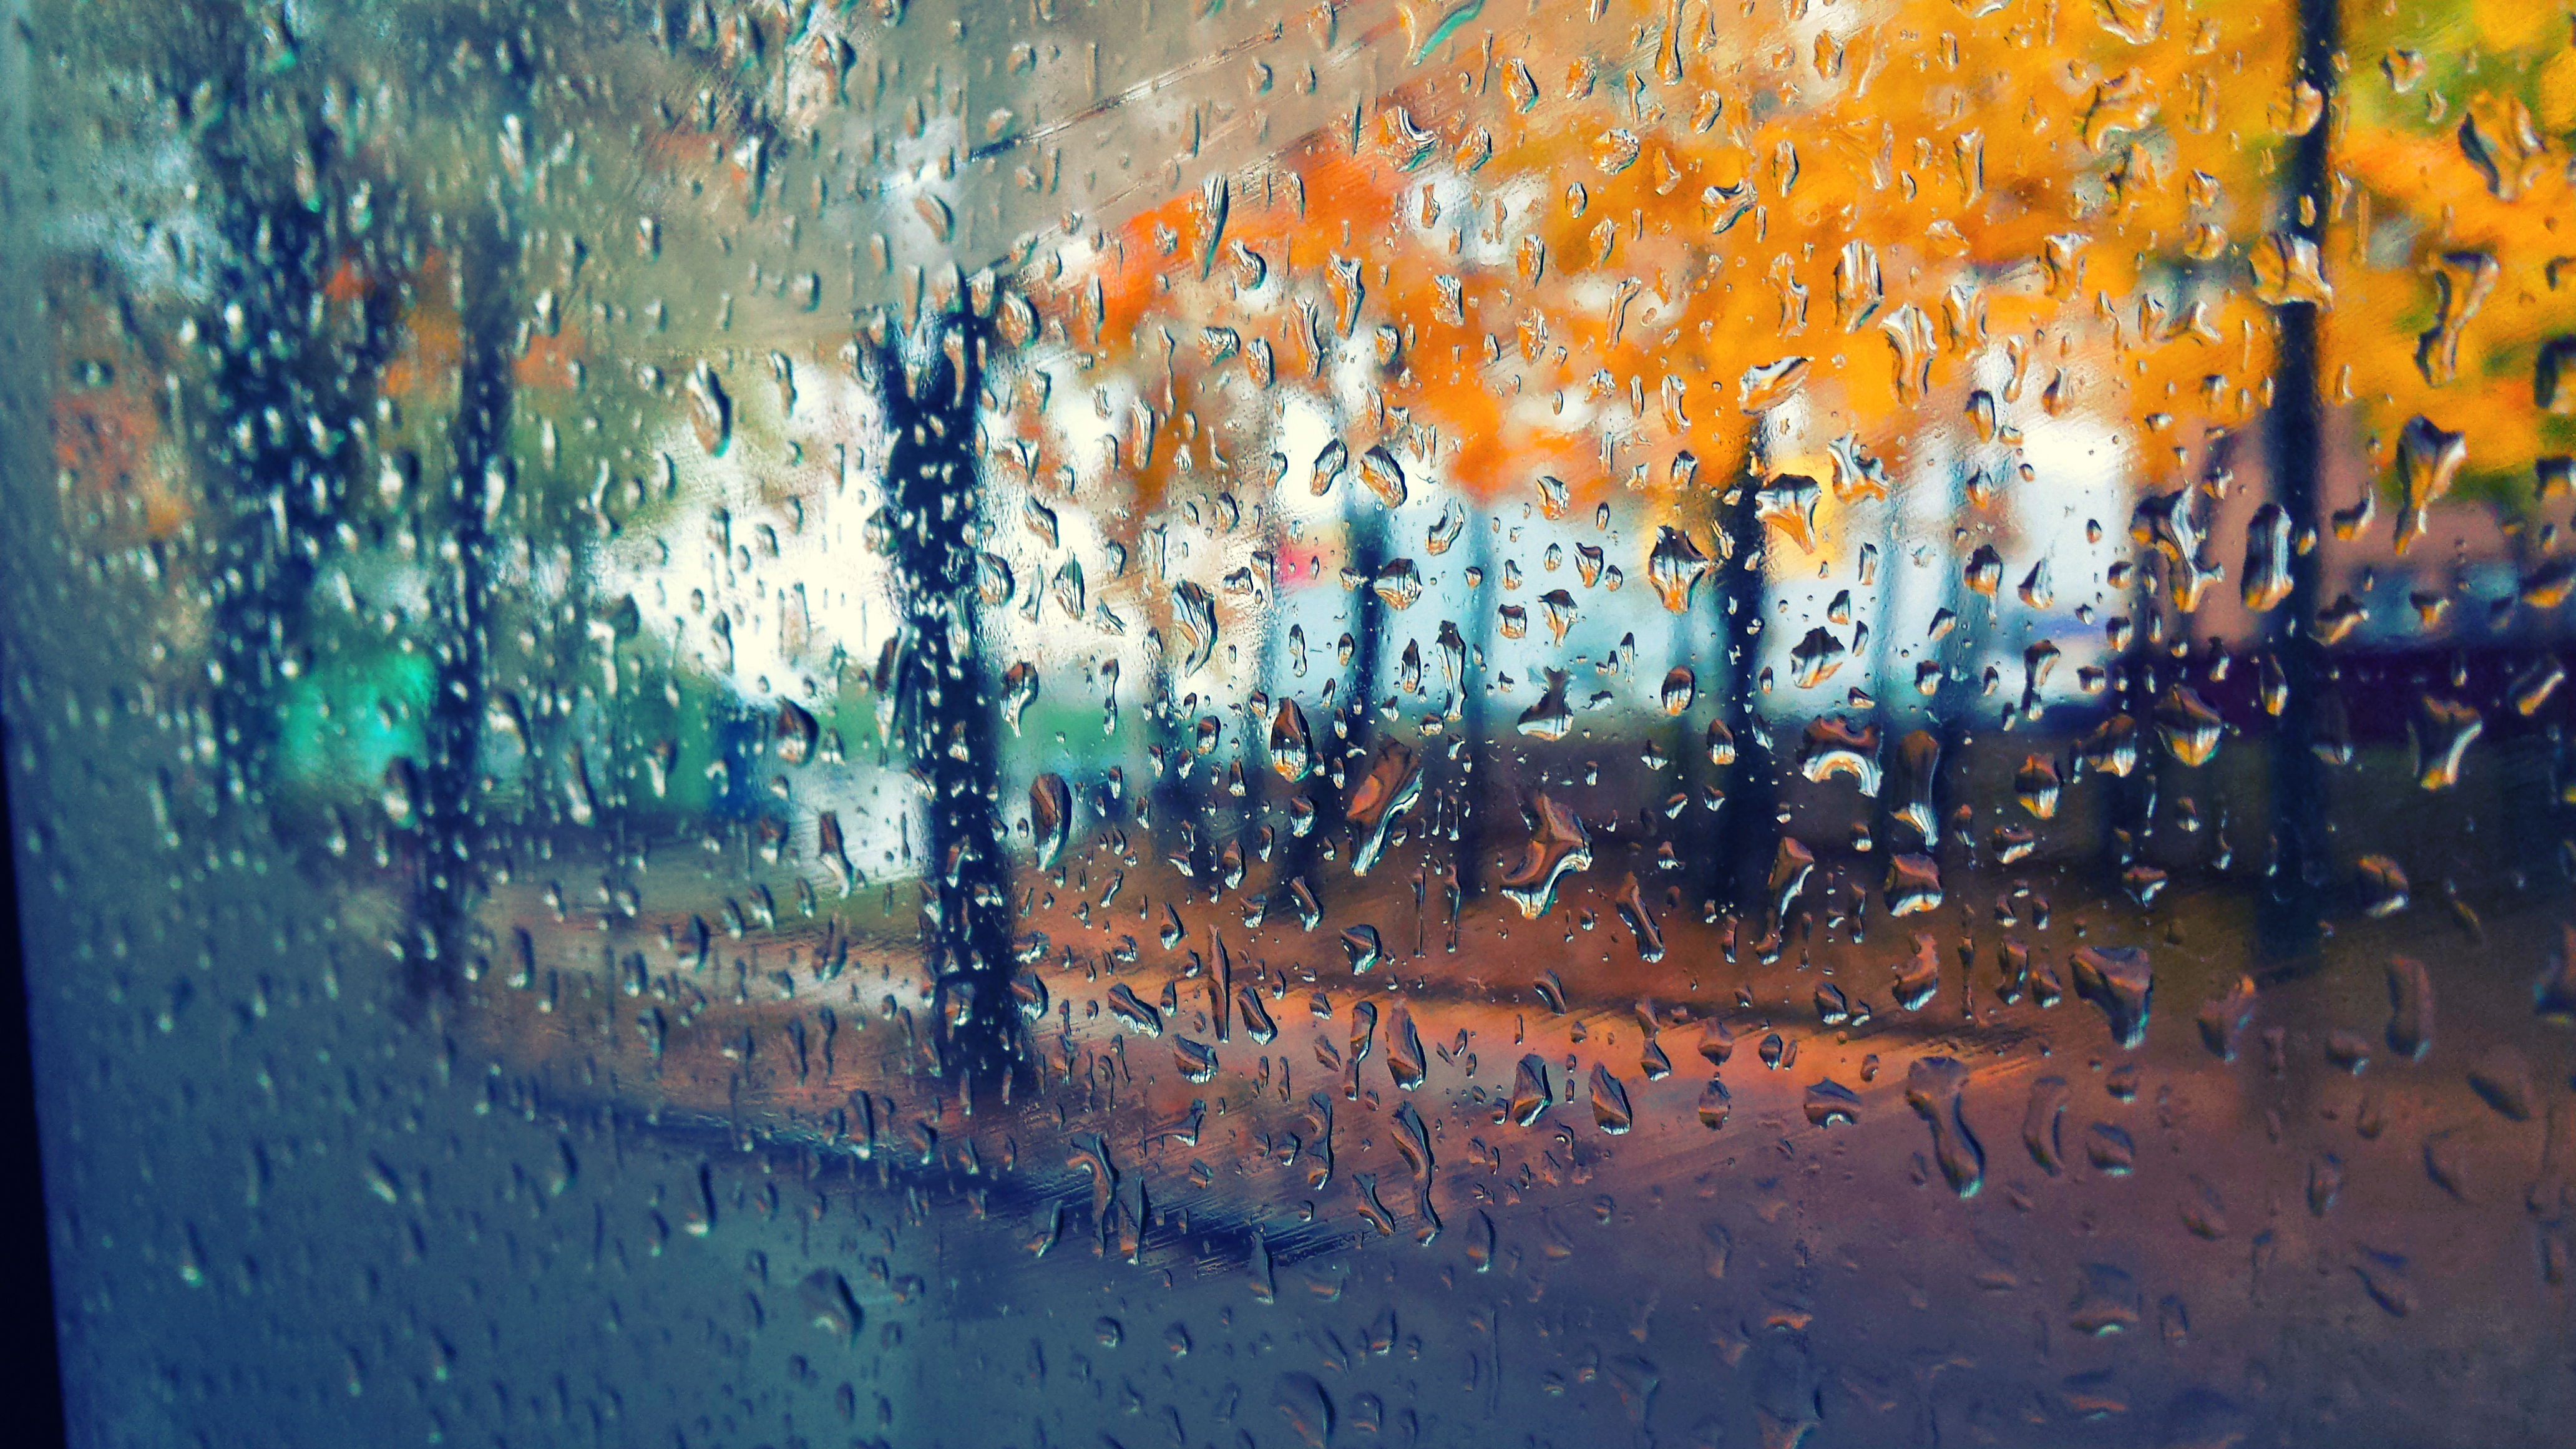 Картинка капли дождя. Капли на стекле. Дождливая осень. Осень дождь. Капли дождя на окне.